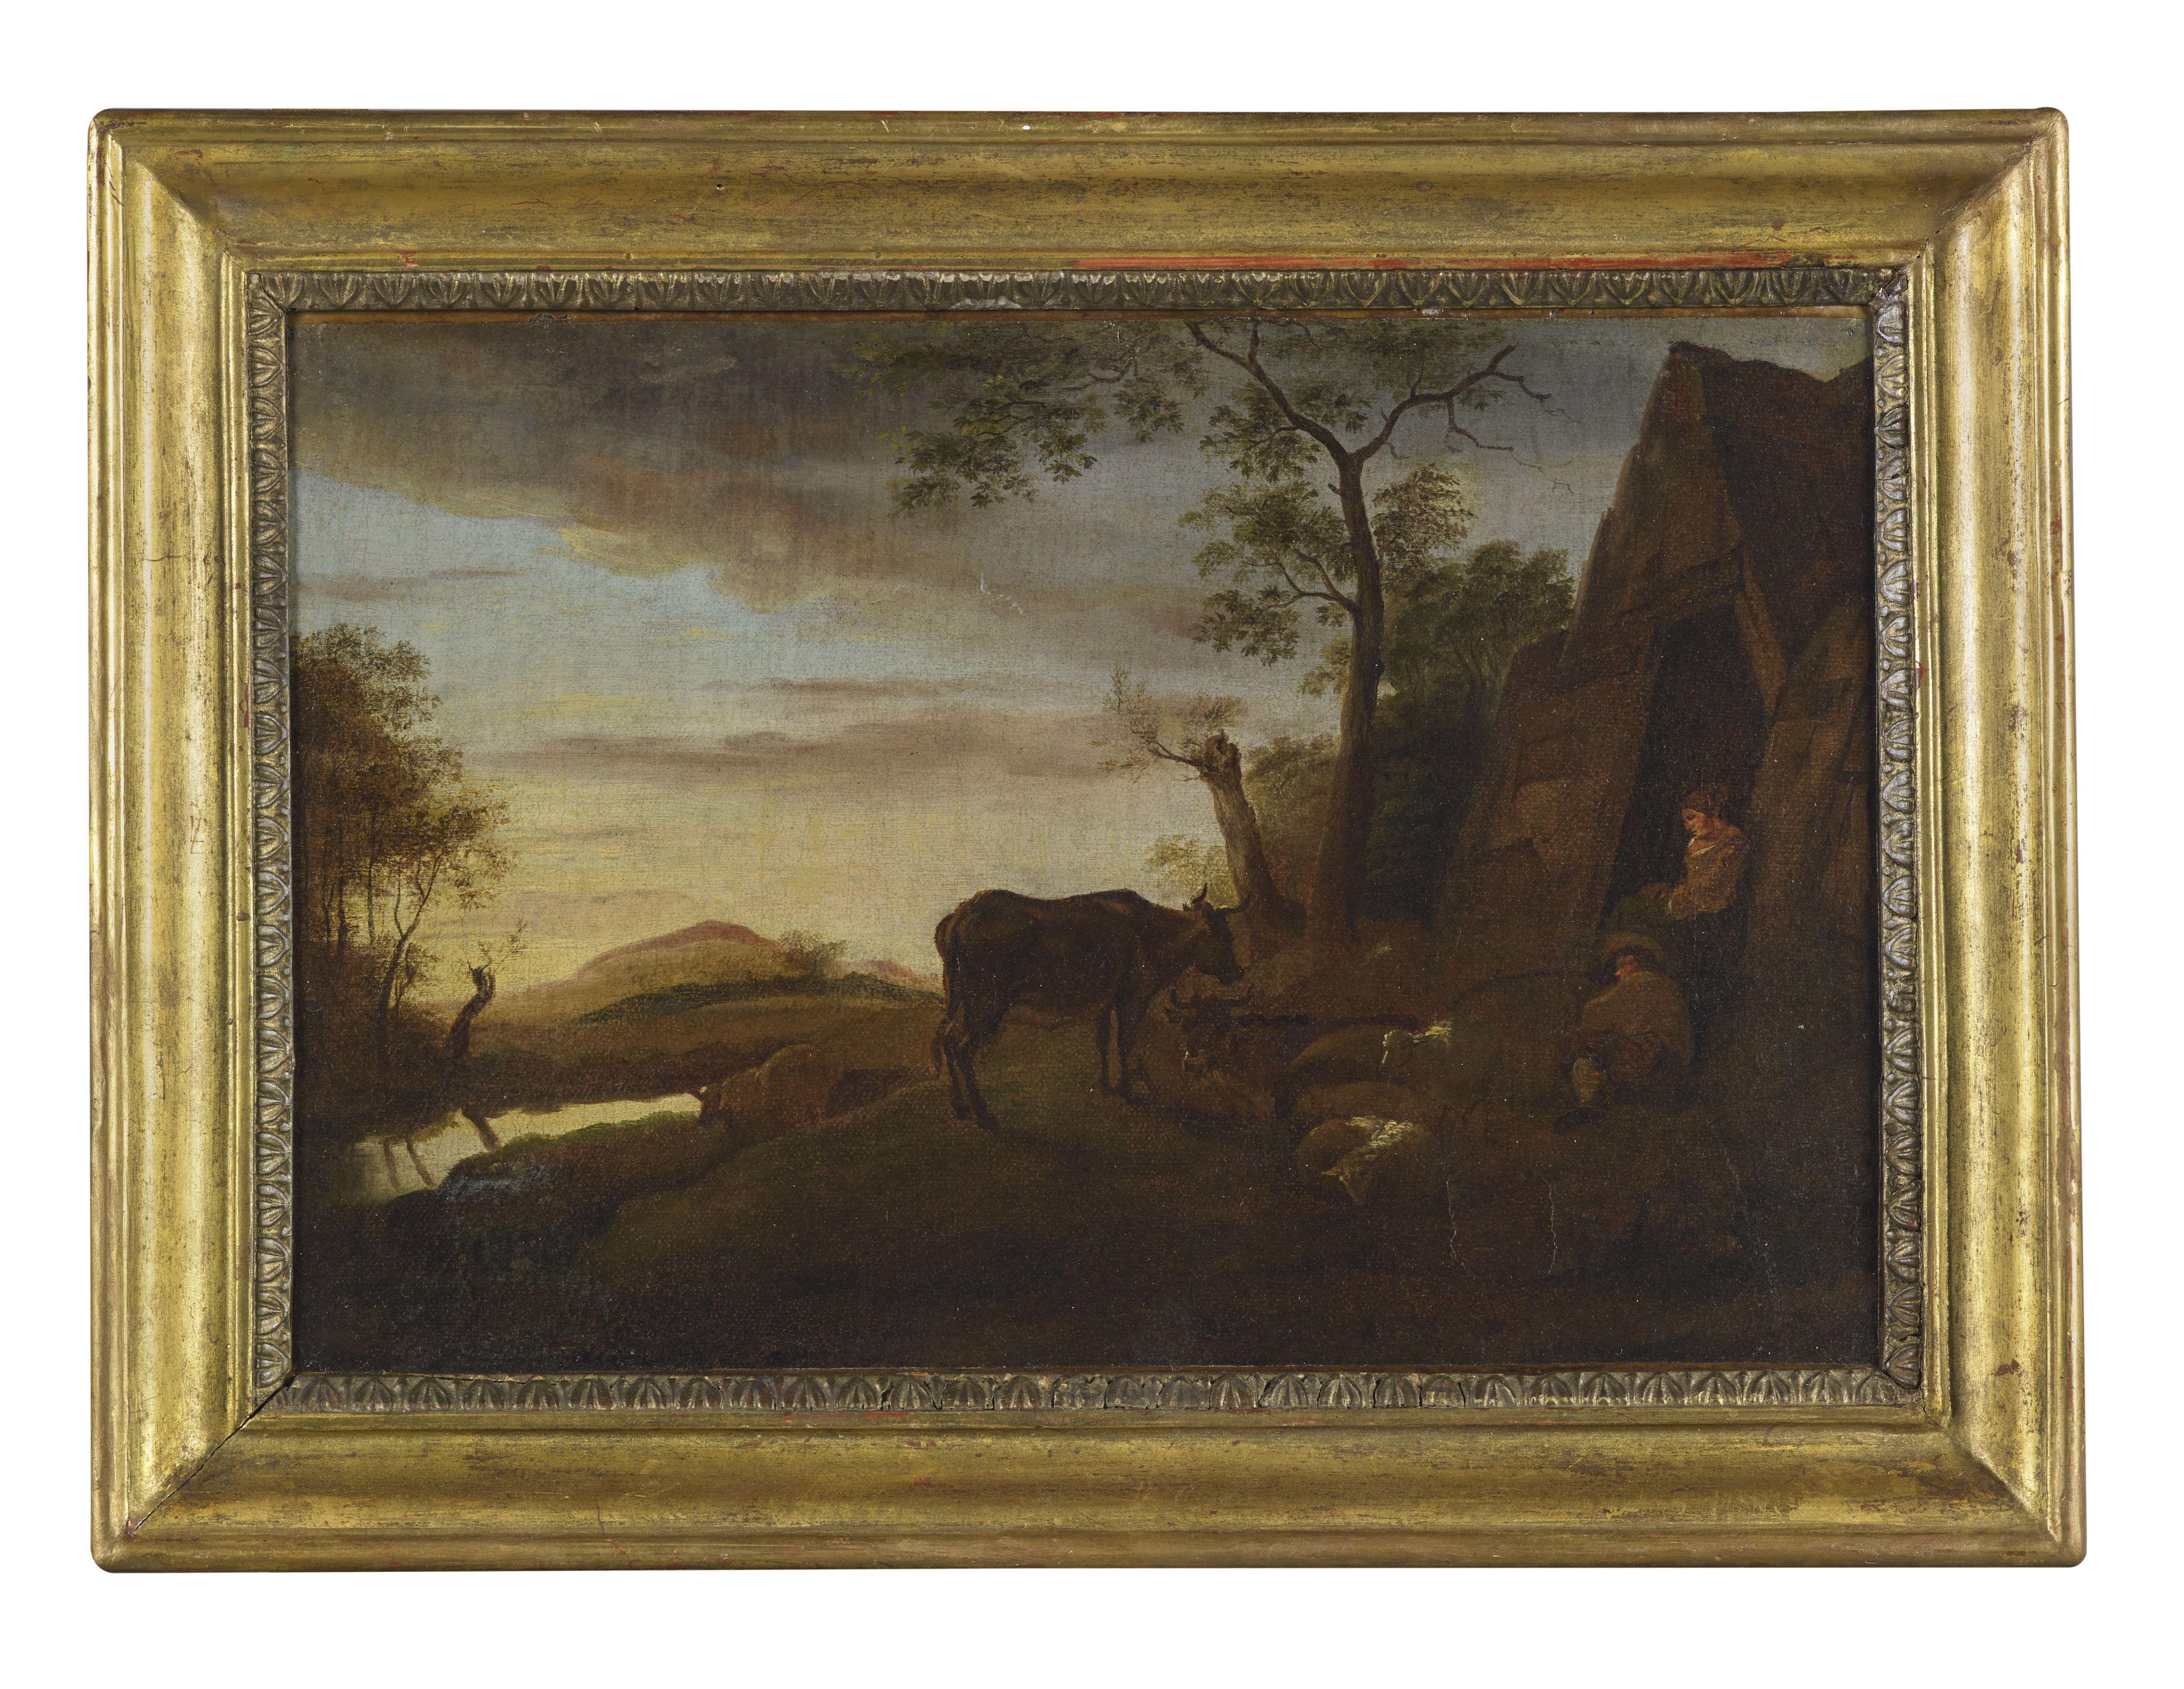 Paysage du XVIIIe siècle de l'école flamande Gens et vaches Huile sur toile verte